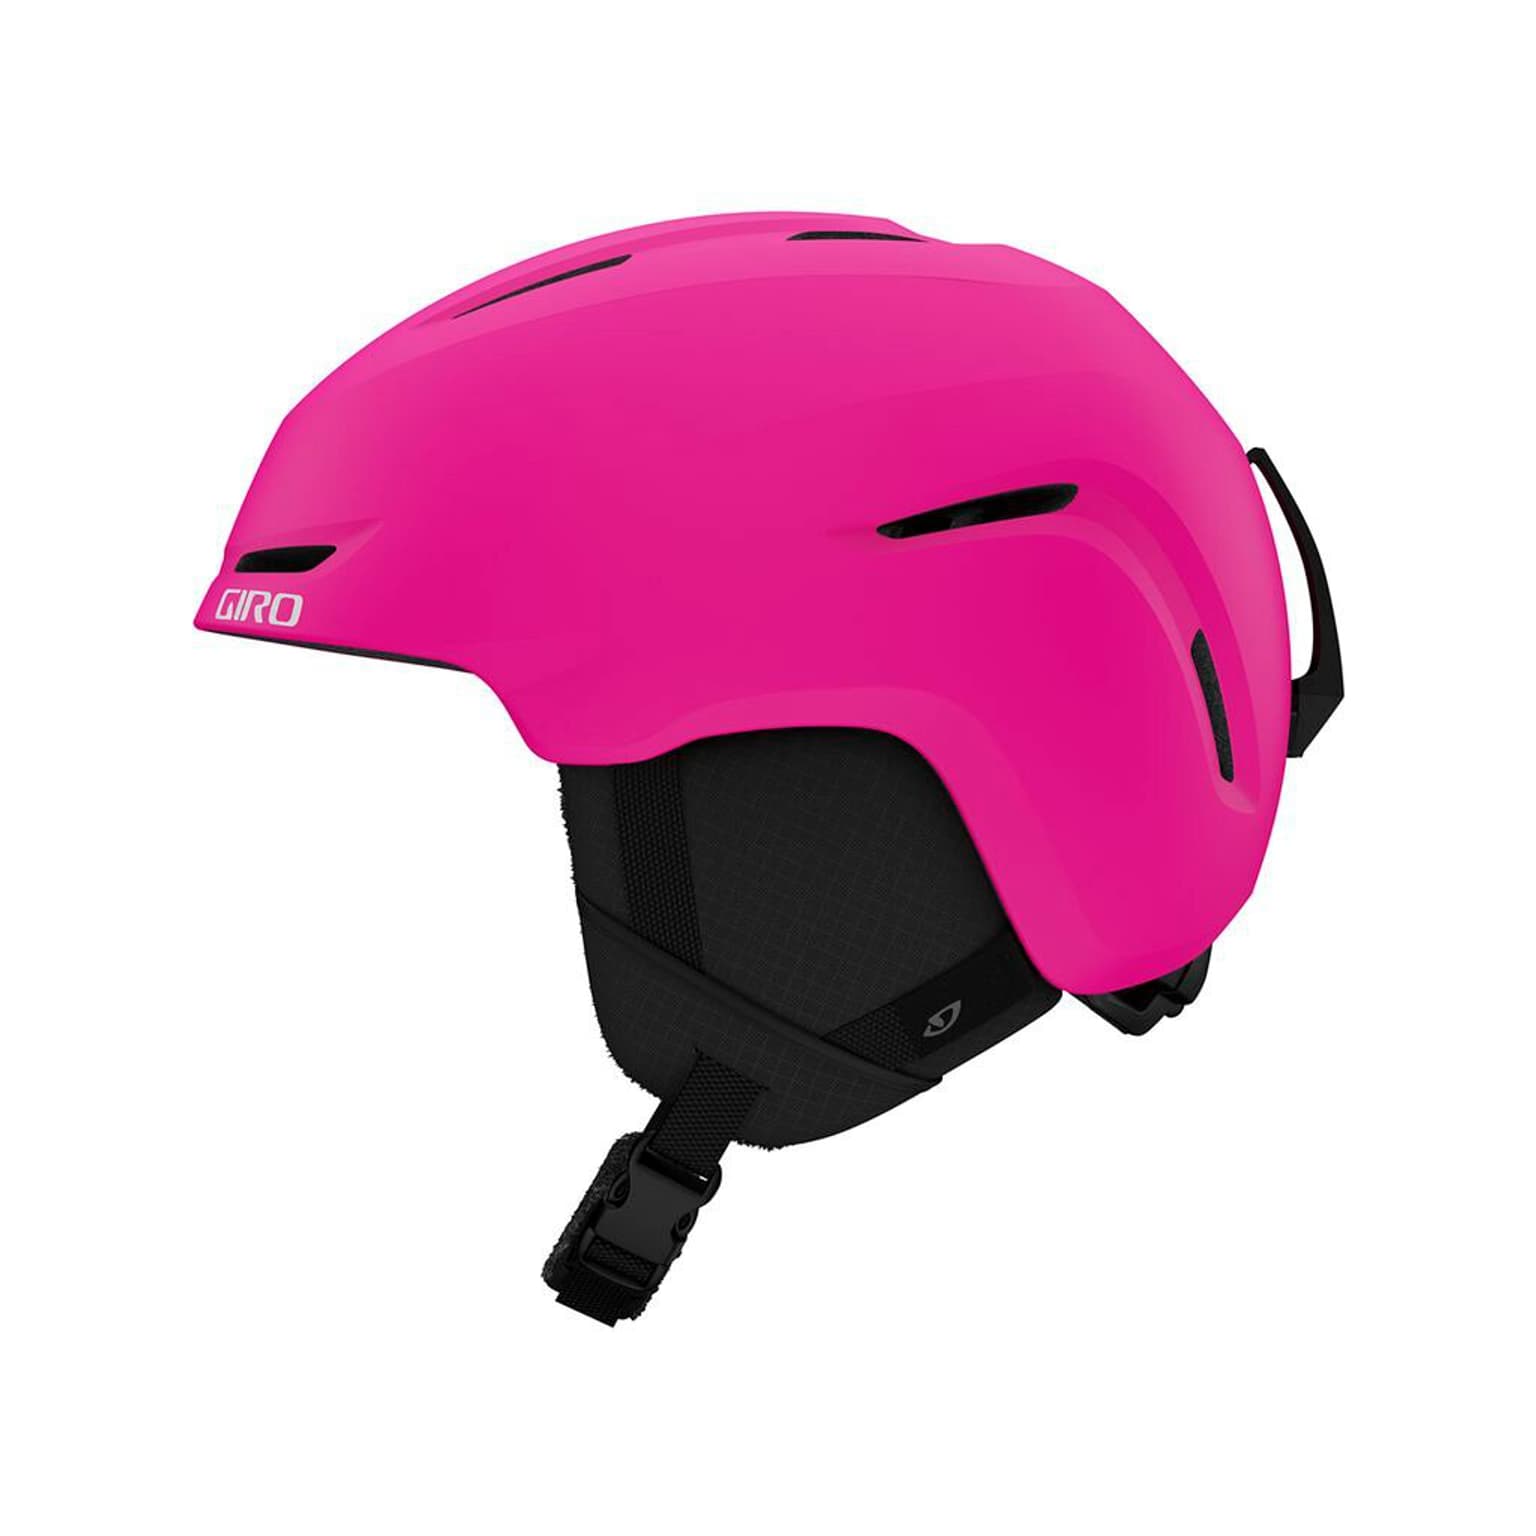 Giro Giro Spur Helmet Casque de ski magenta 2